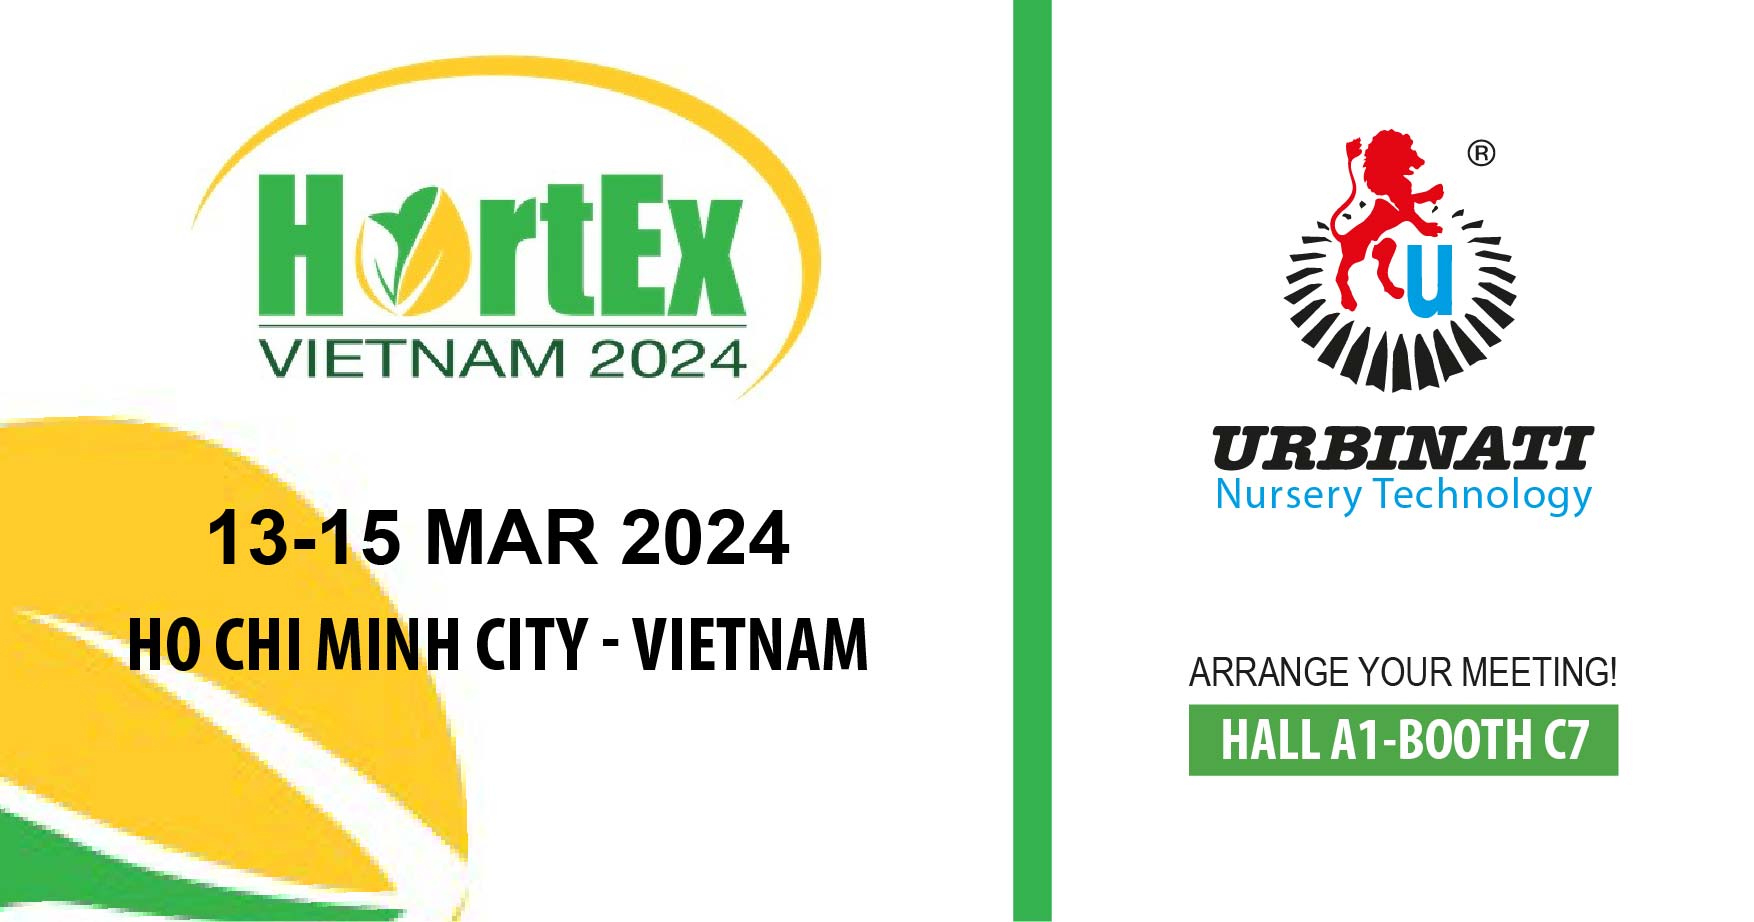 13-15 Mar 2024 Hortex Vietnam